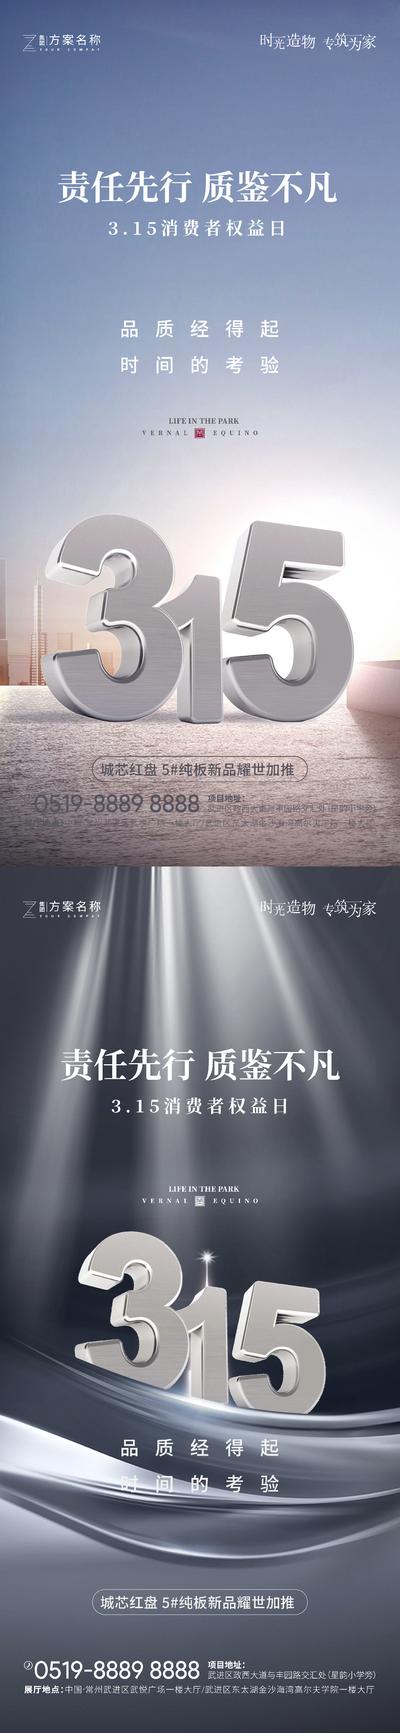 南门网 广告 海报 节日 315 消费者 权益日 立体 系列 品质